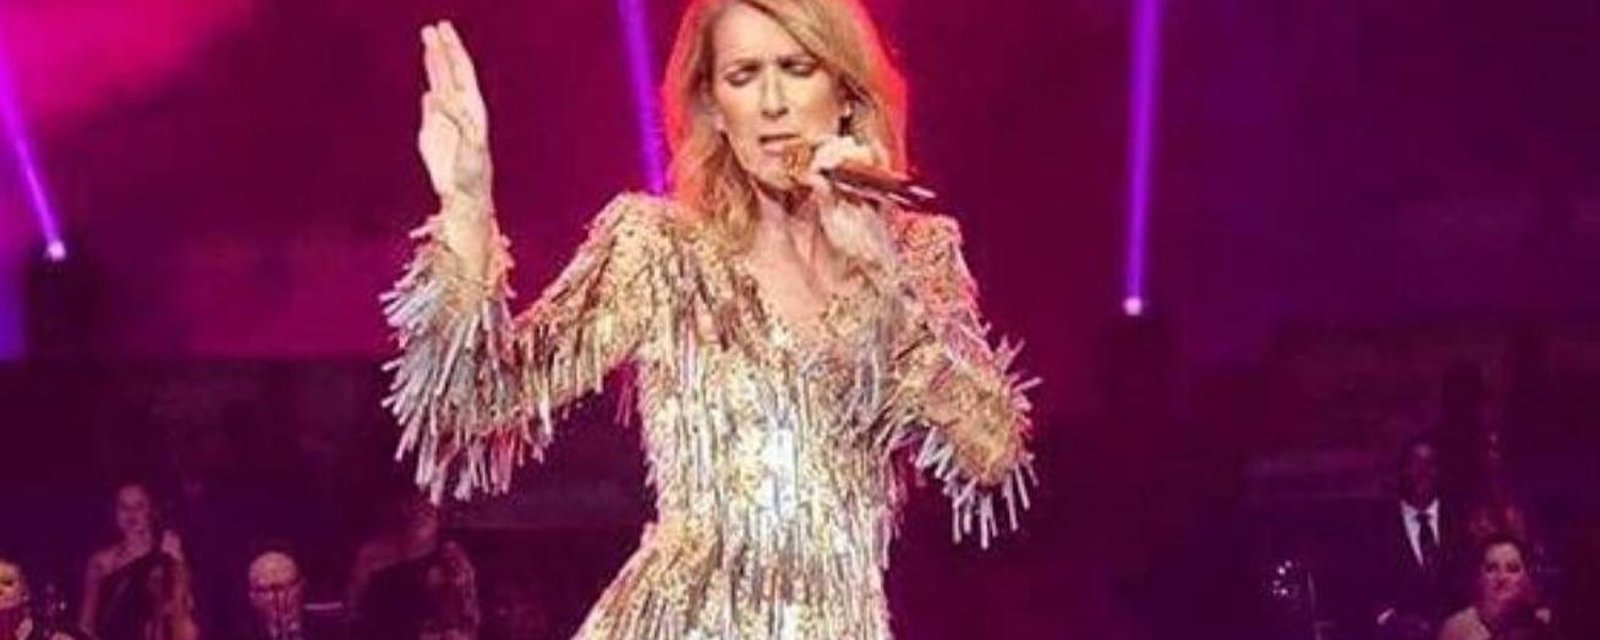 La tenue sexy de Céline Dion fait réagir sur les réseaux sociaux!